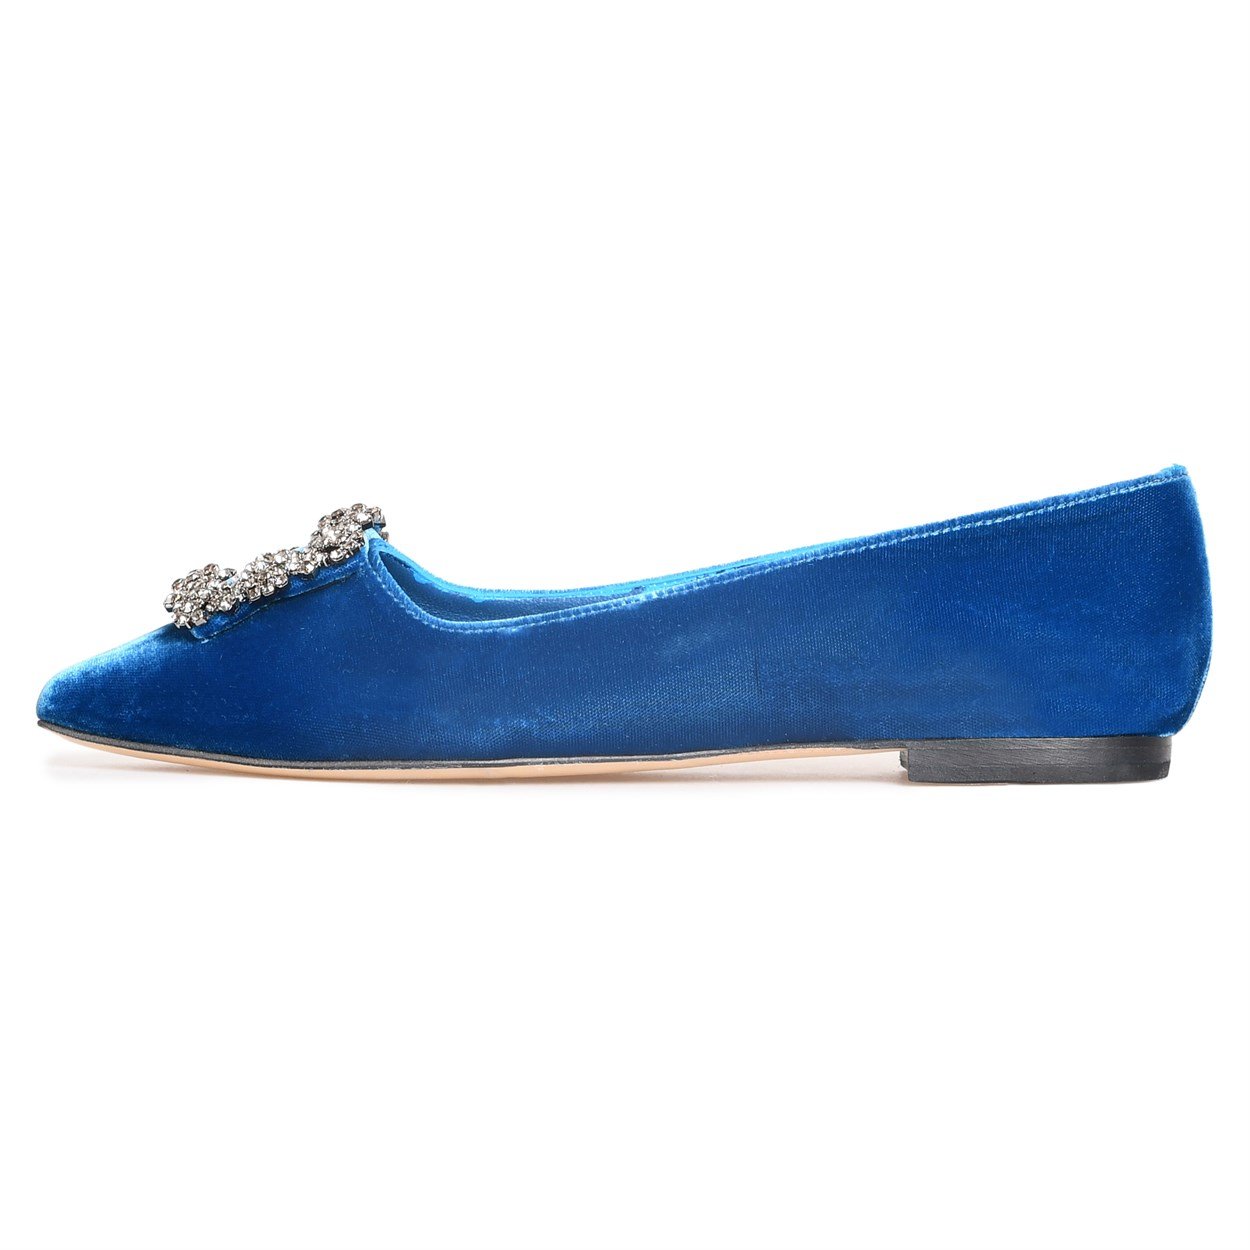 Mavi Kadife Kadın Babet Ayakkabı | Flower Ayakkabı